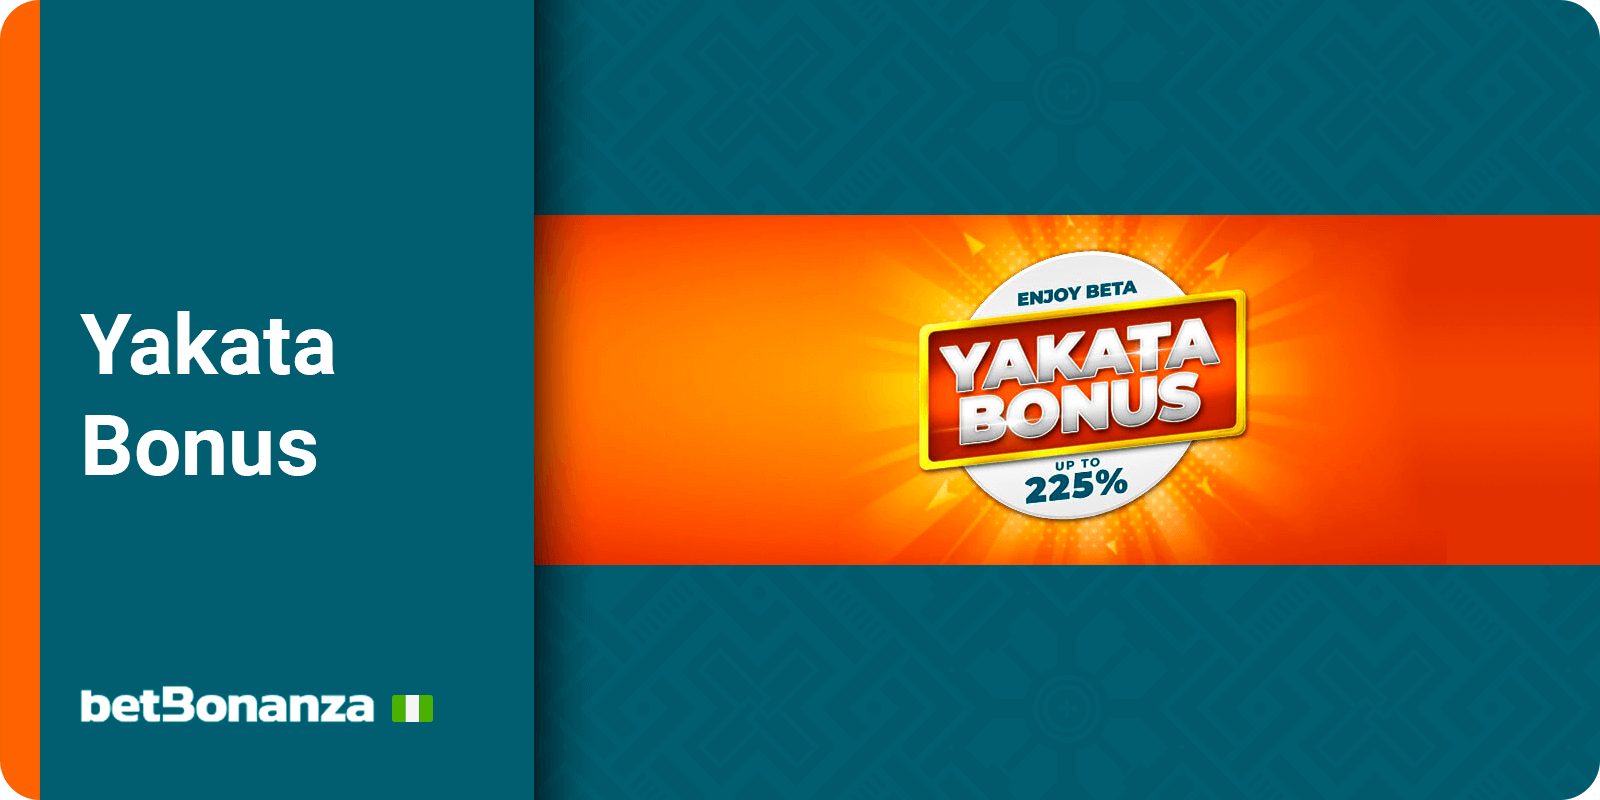 Betbonanza Casino - Yakata Bonus for combo betting